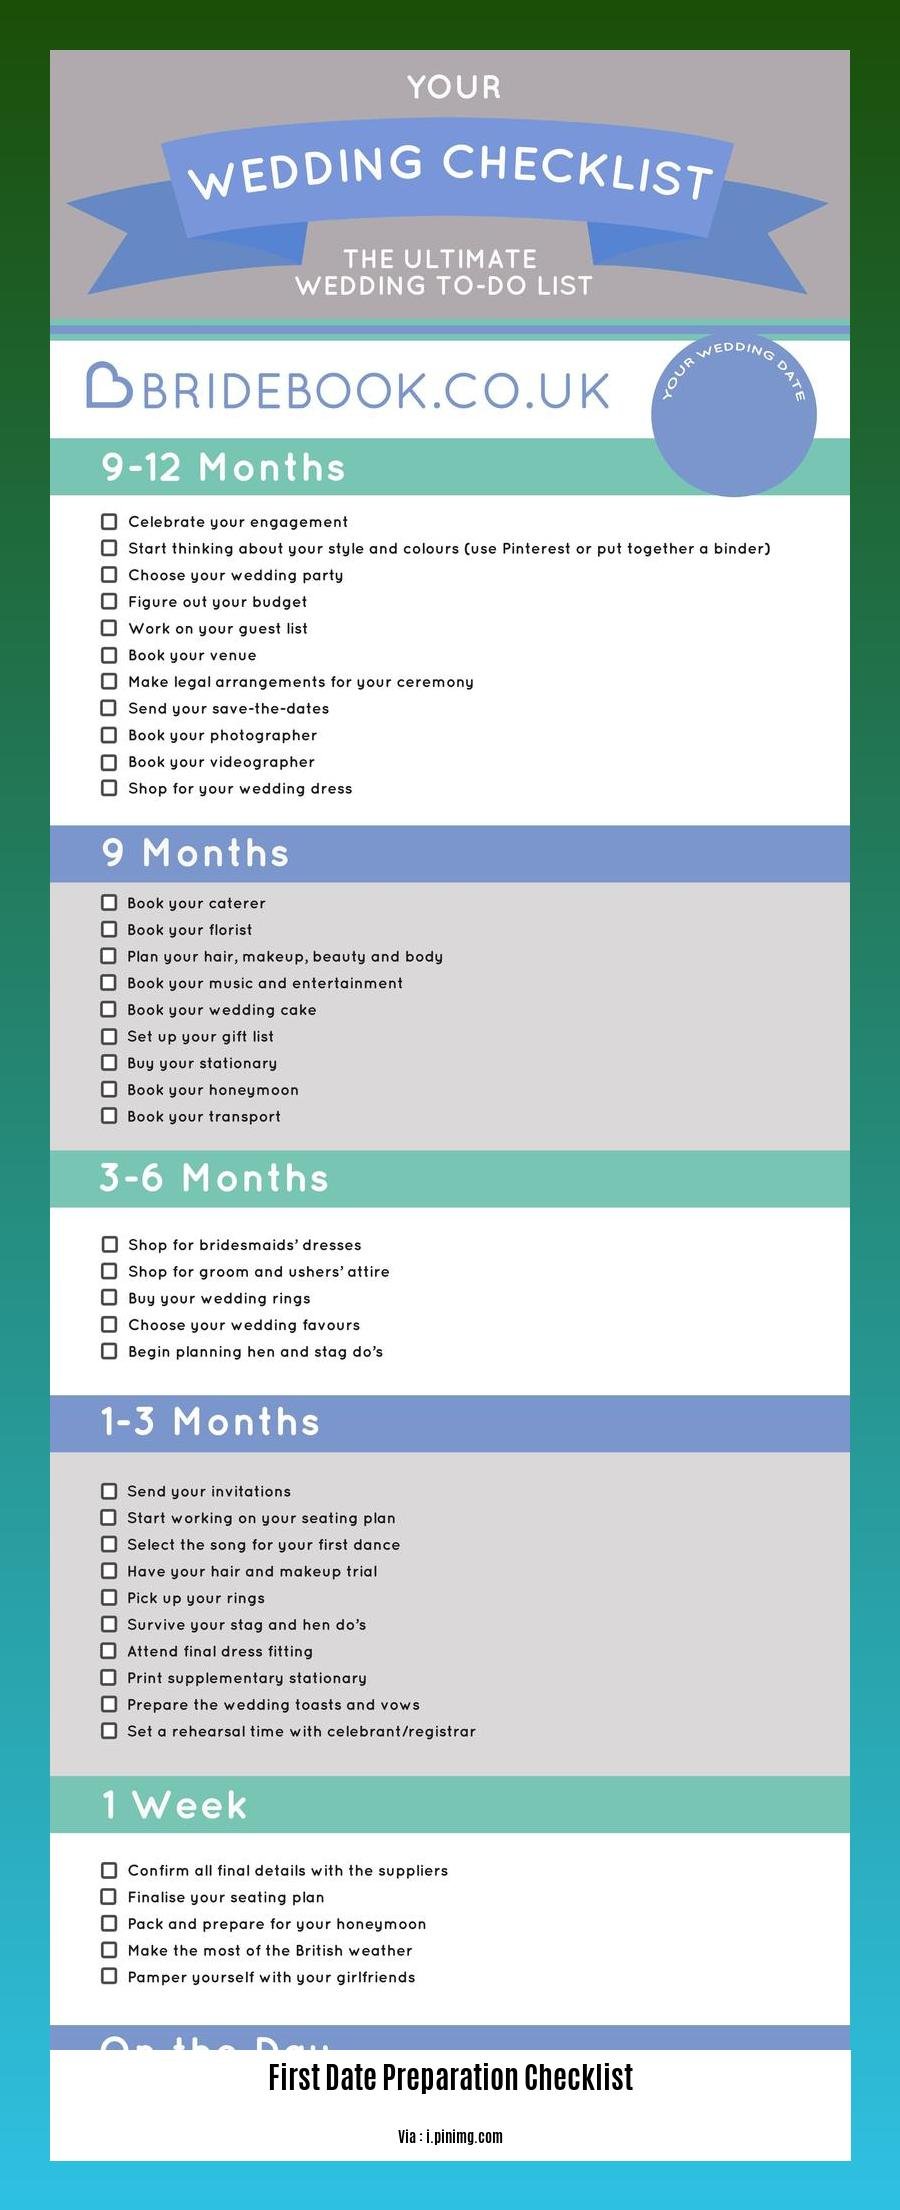 first date preparation checklist